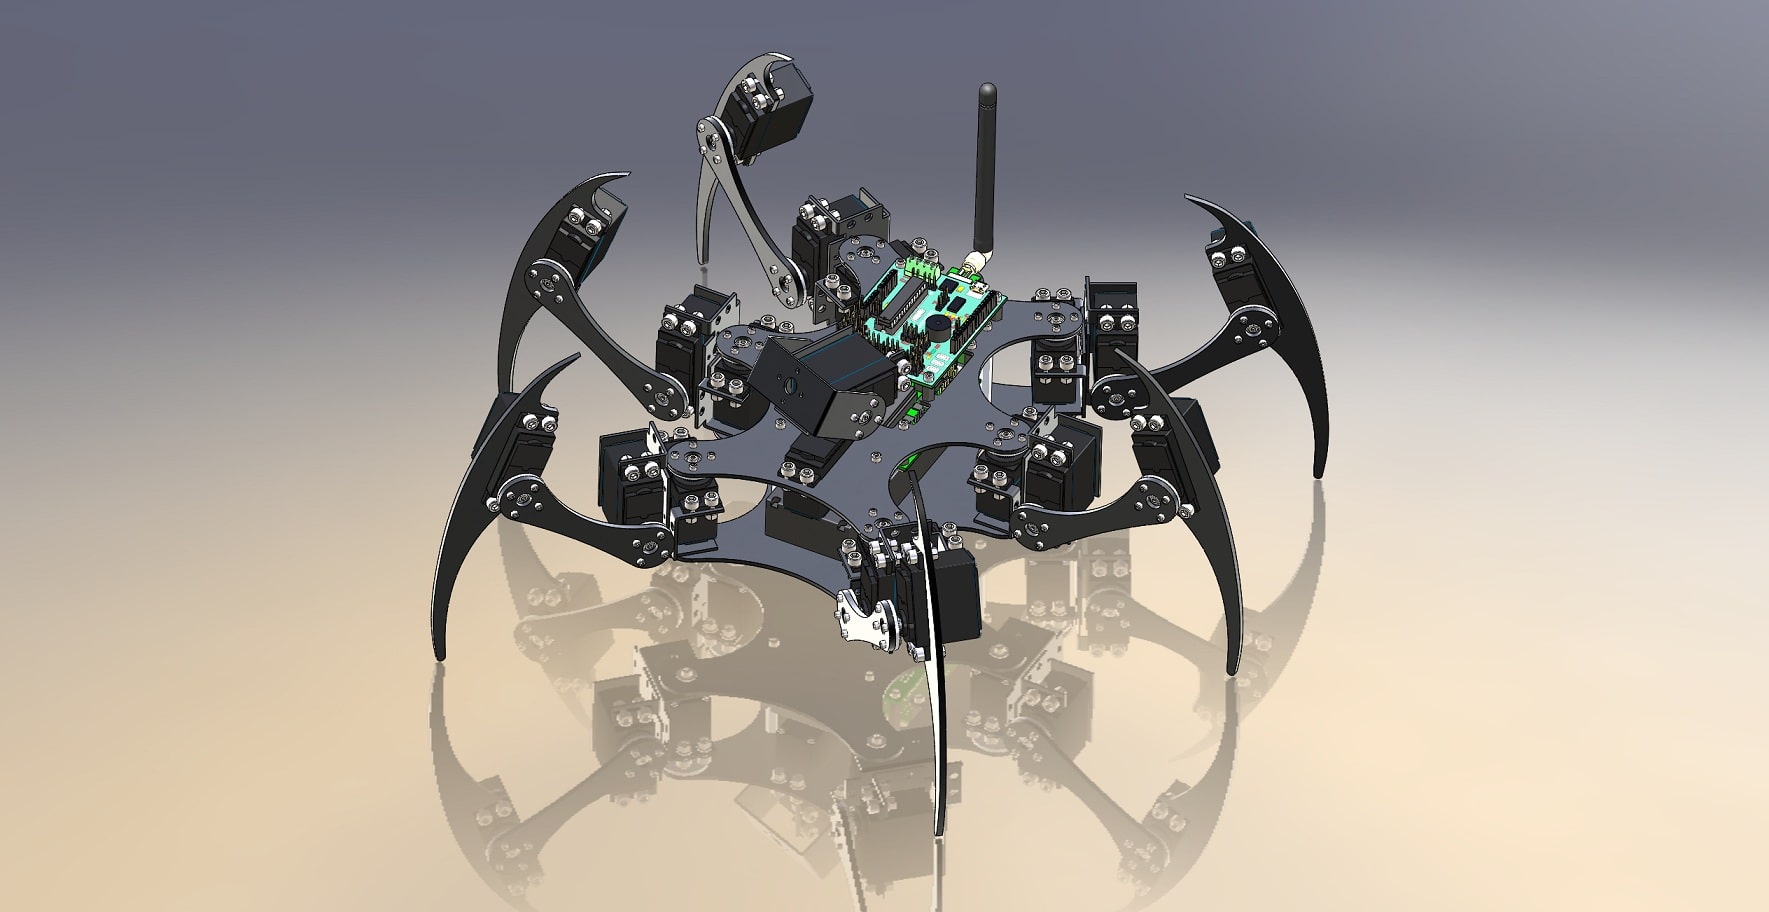 طراحی ربات صنعتی عنکبوتی | دانلود انواع مدل های طراحی شده ربات